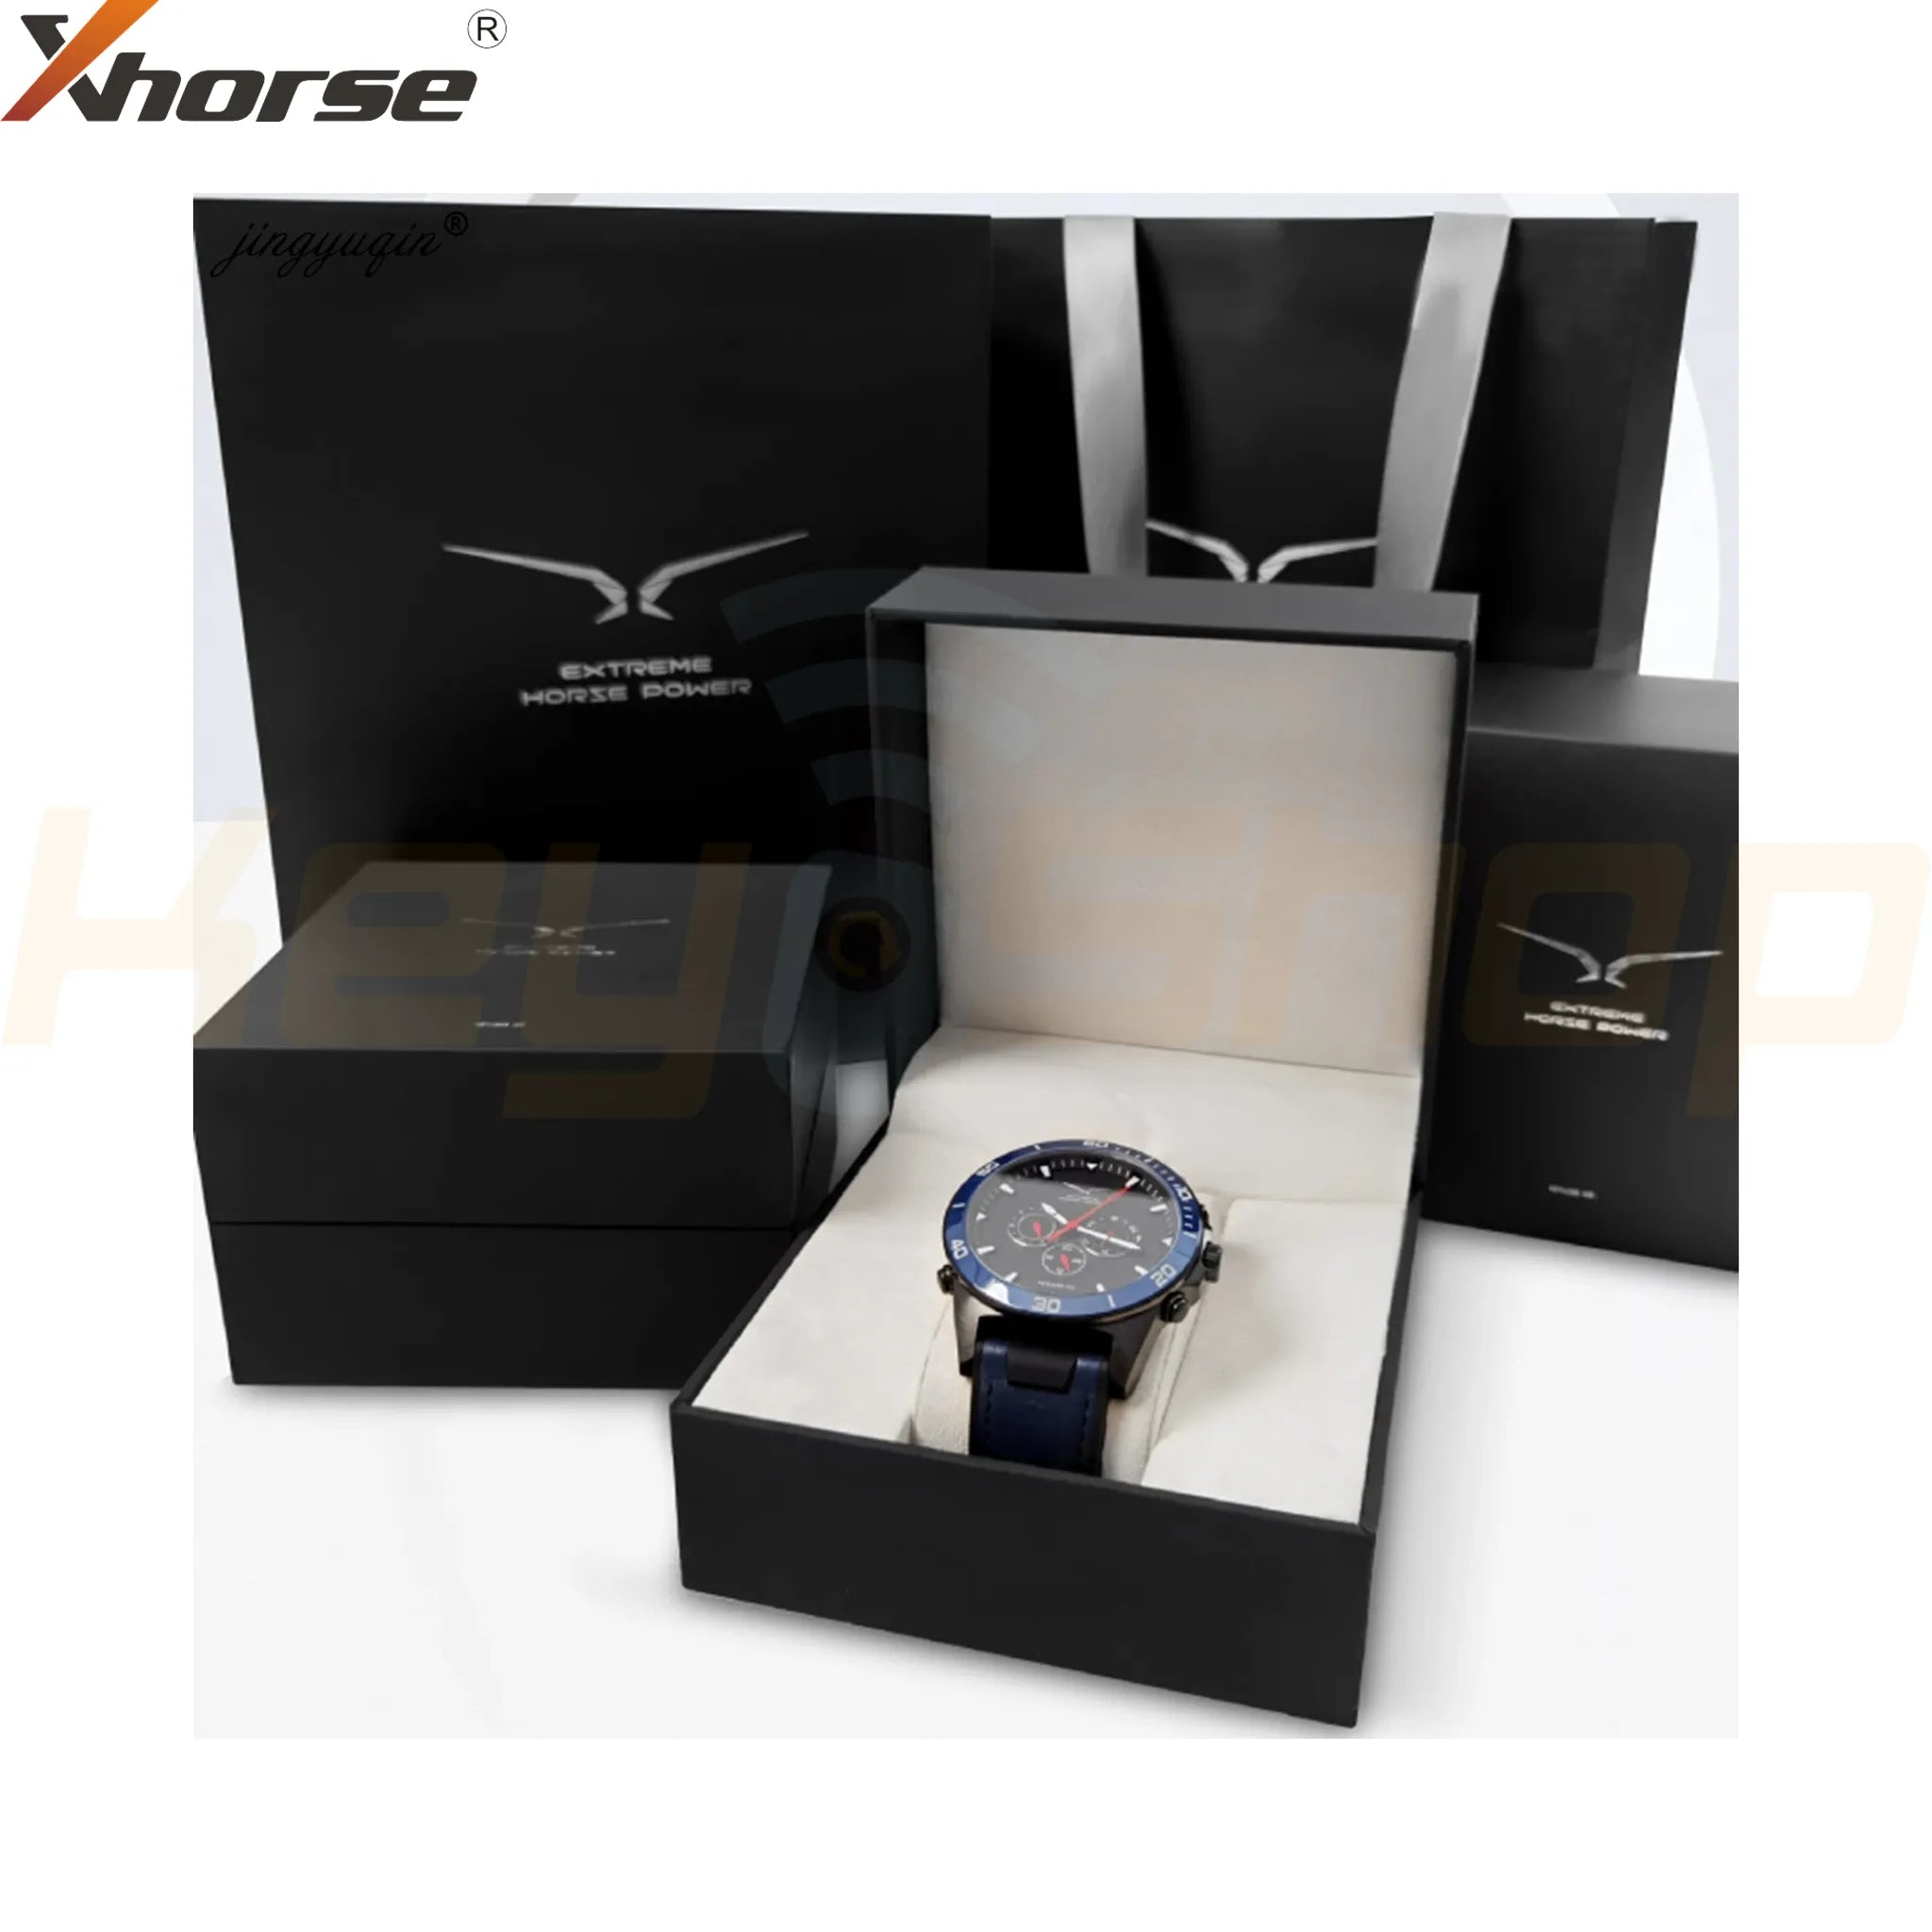 מפתח חכם שעון אוניברסלי אקסהורס-סטייל | 4-לחצנים | XSWK05 | VVDI (כחול)